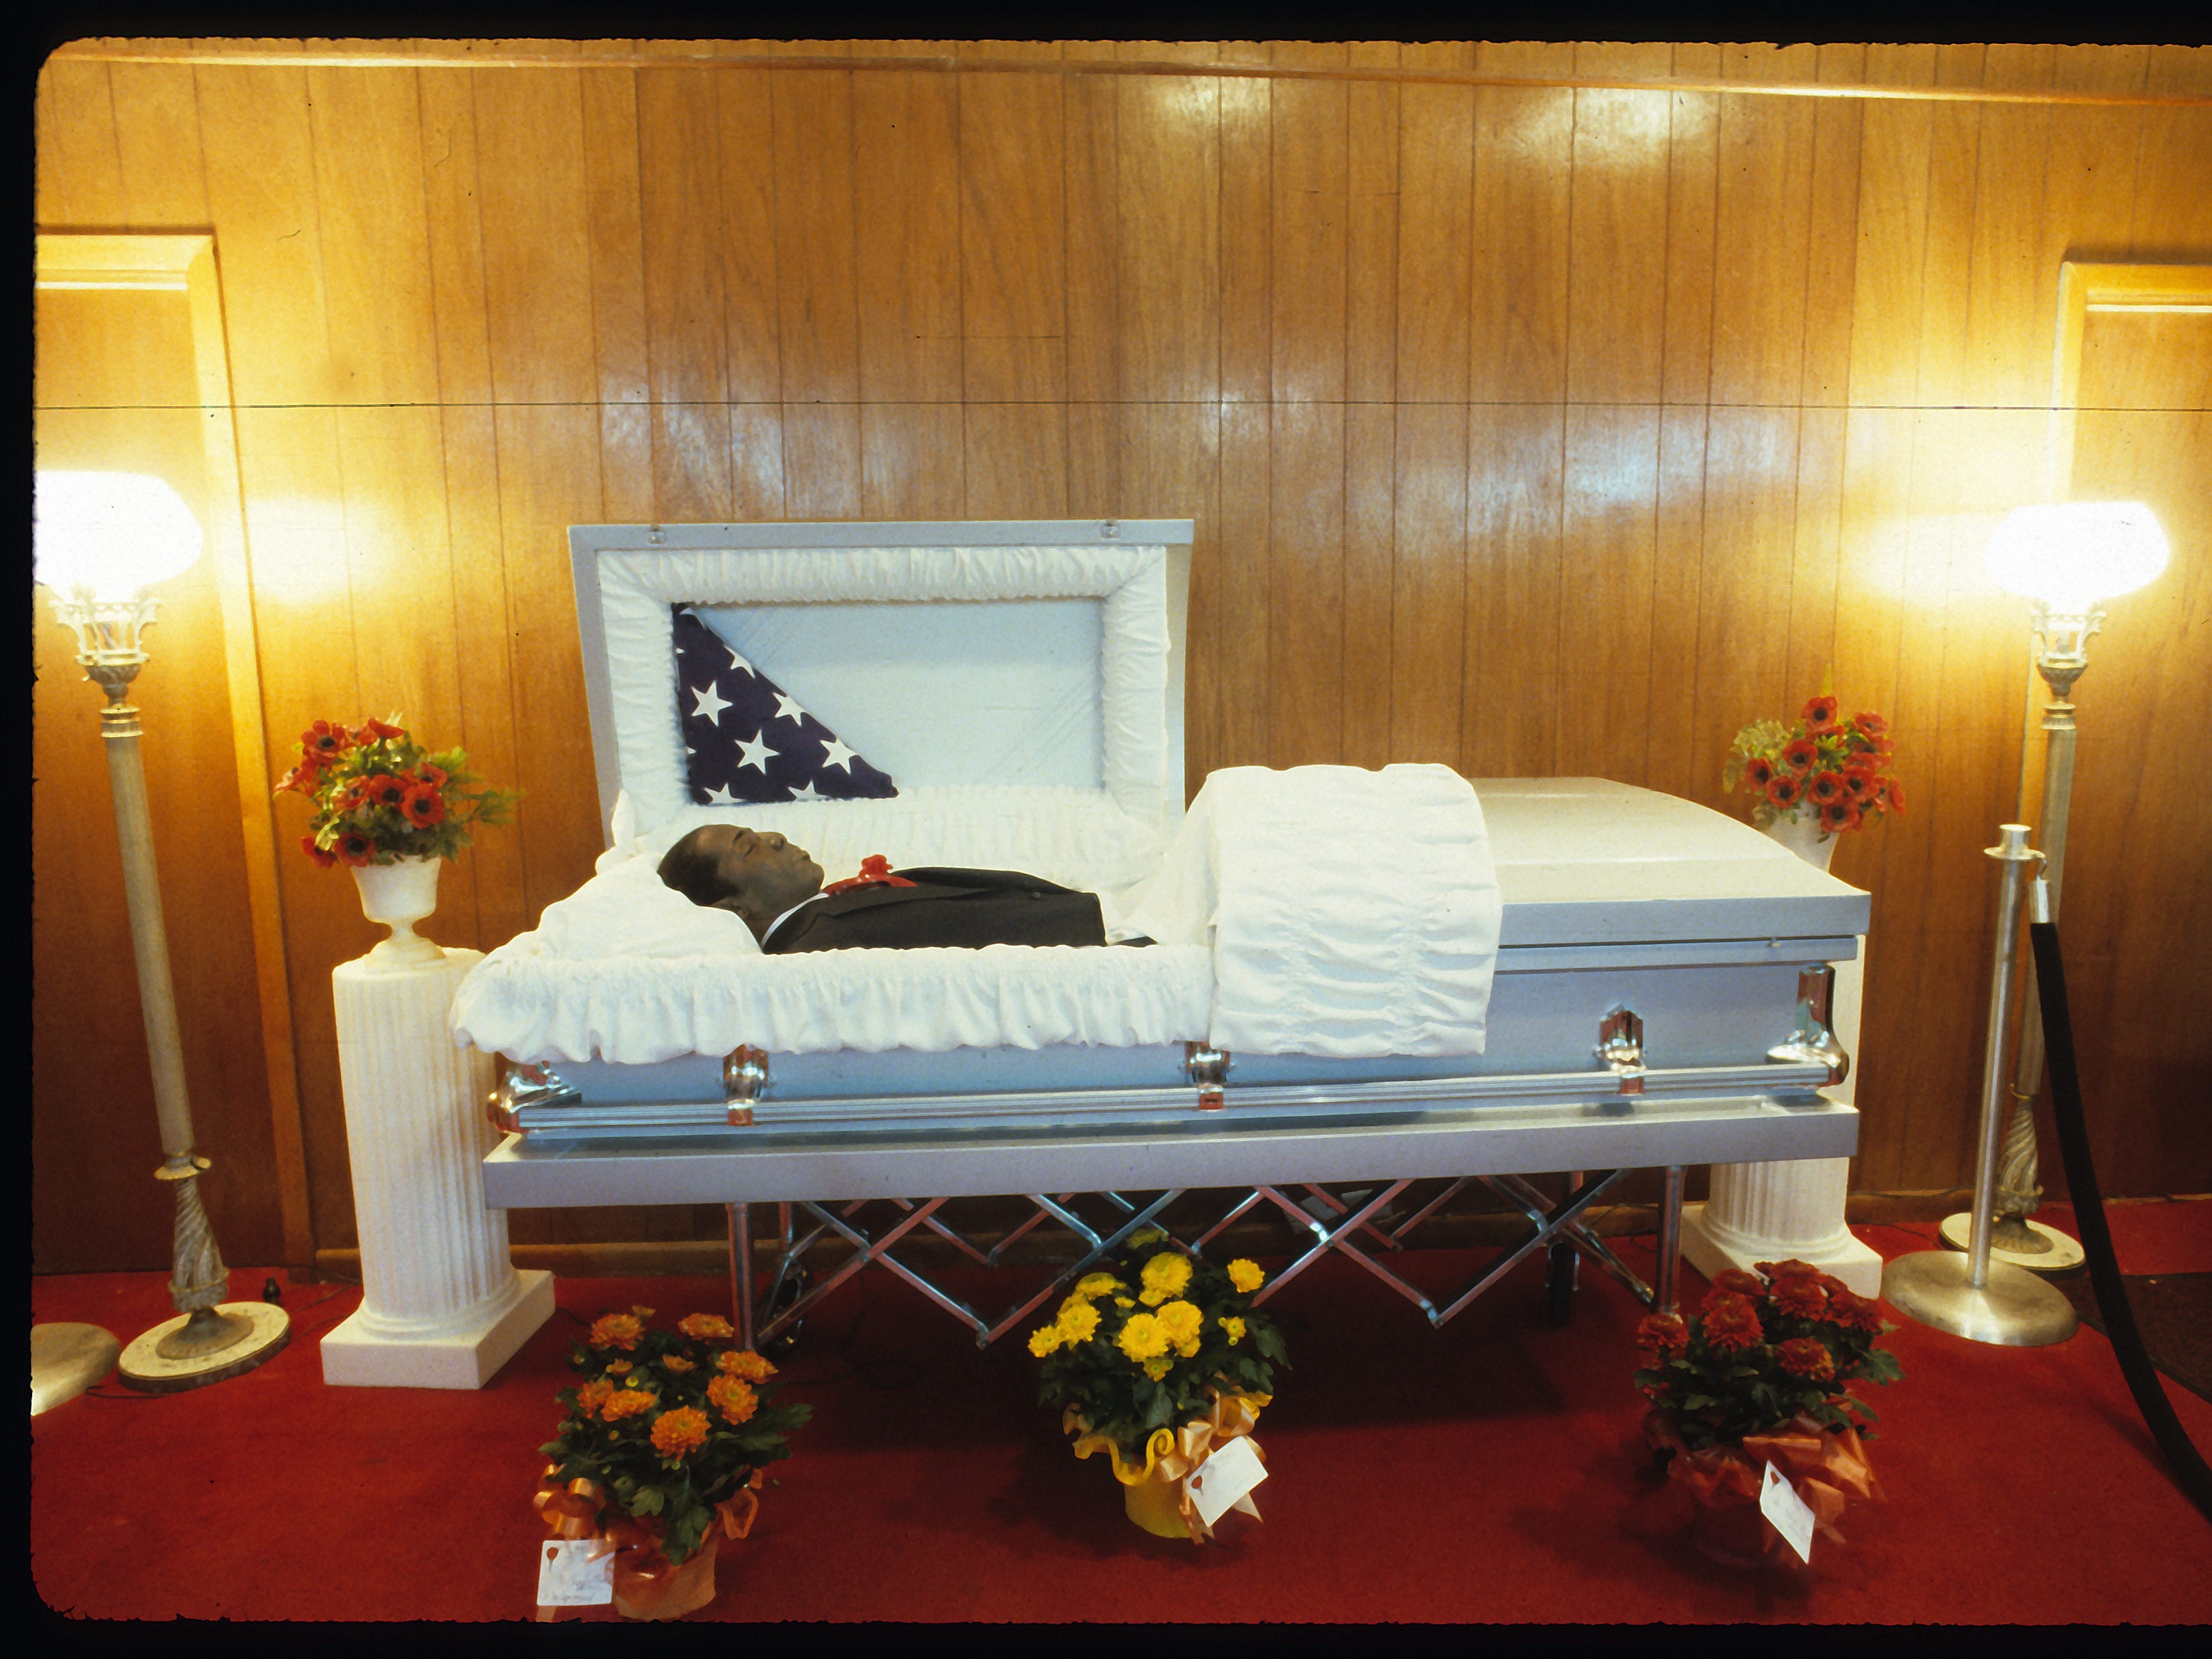 Charlie Brooks in einem Bestattungsunternehmen.  Brooks war der erste Mensch, der durch eine Giftspritze hingerichtet wurde.